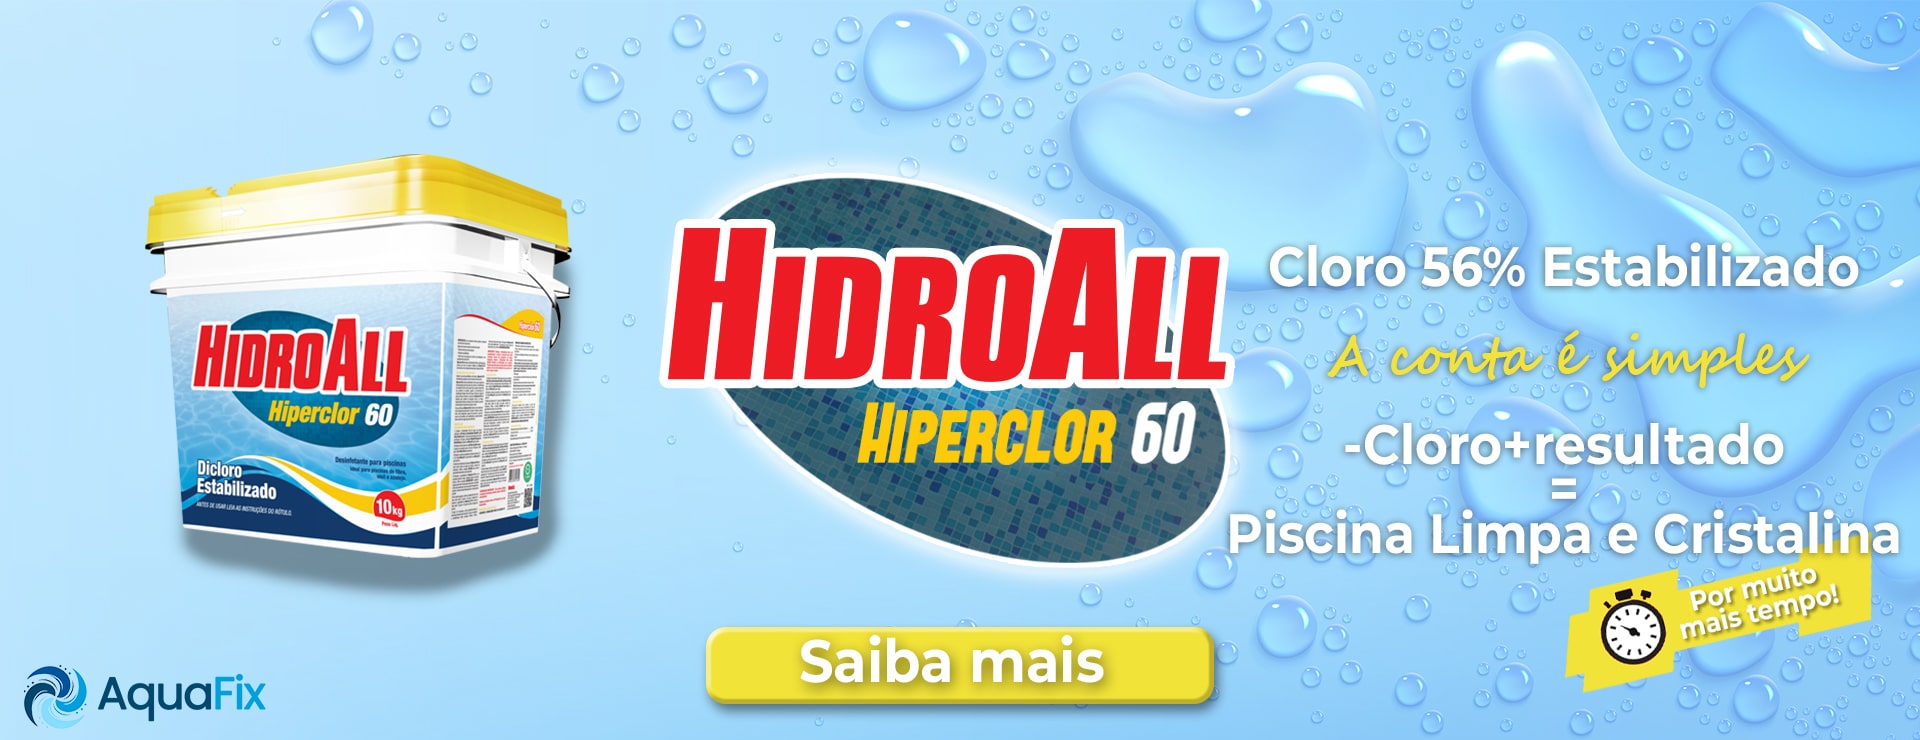 HiperClor HidroAll